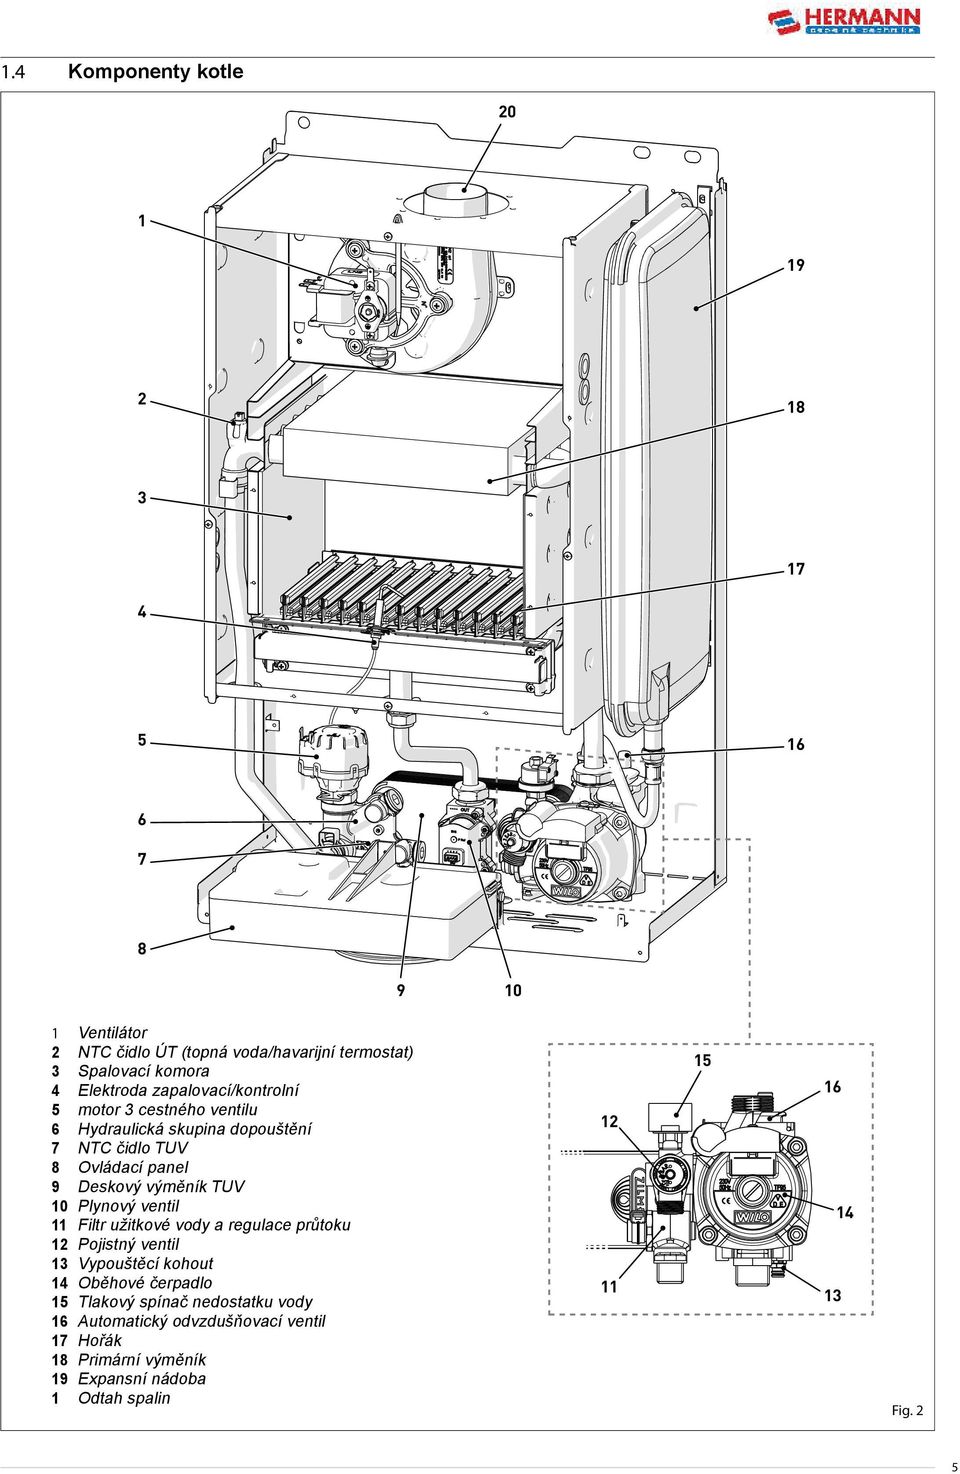 výměník TUV 10 Plynový ventil 11 Filtr užitkové vody a regulace průtoku 12 Pojistný ventil 13 Vypouštěcí kohout 14 Oběhové čerpadlo 15